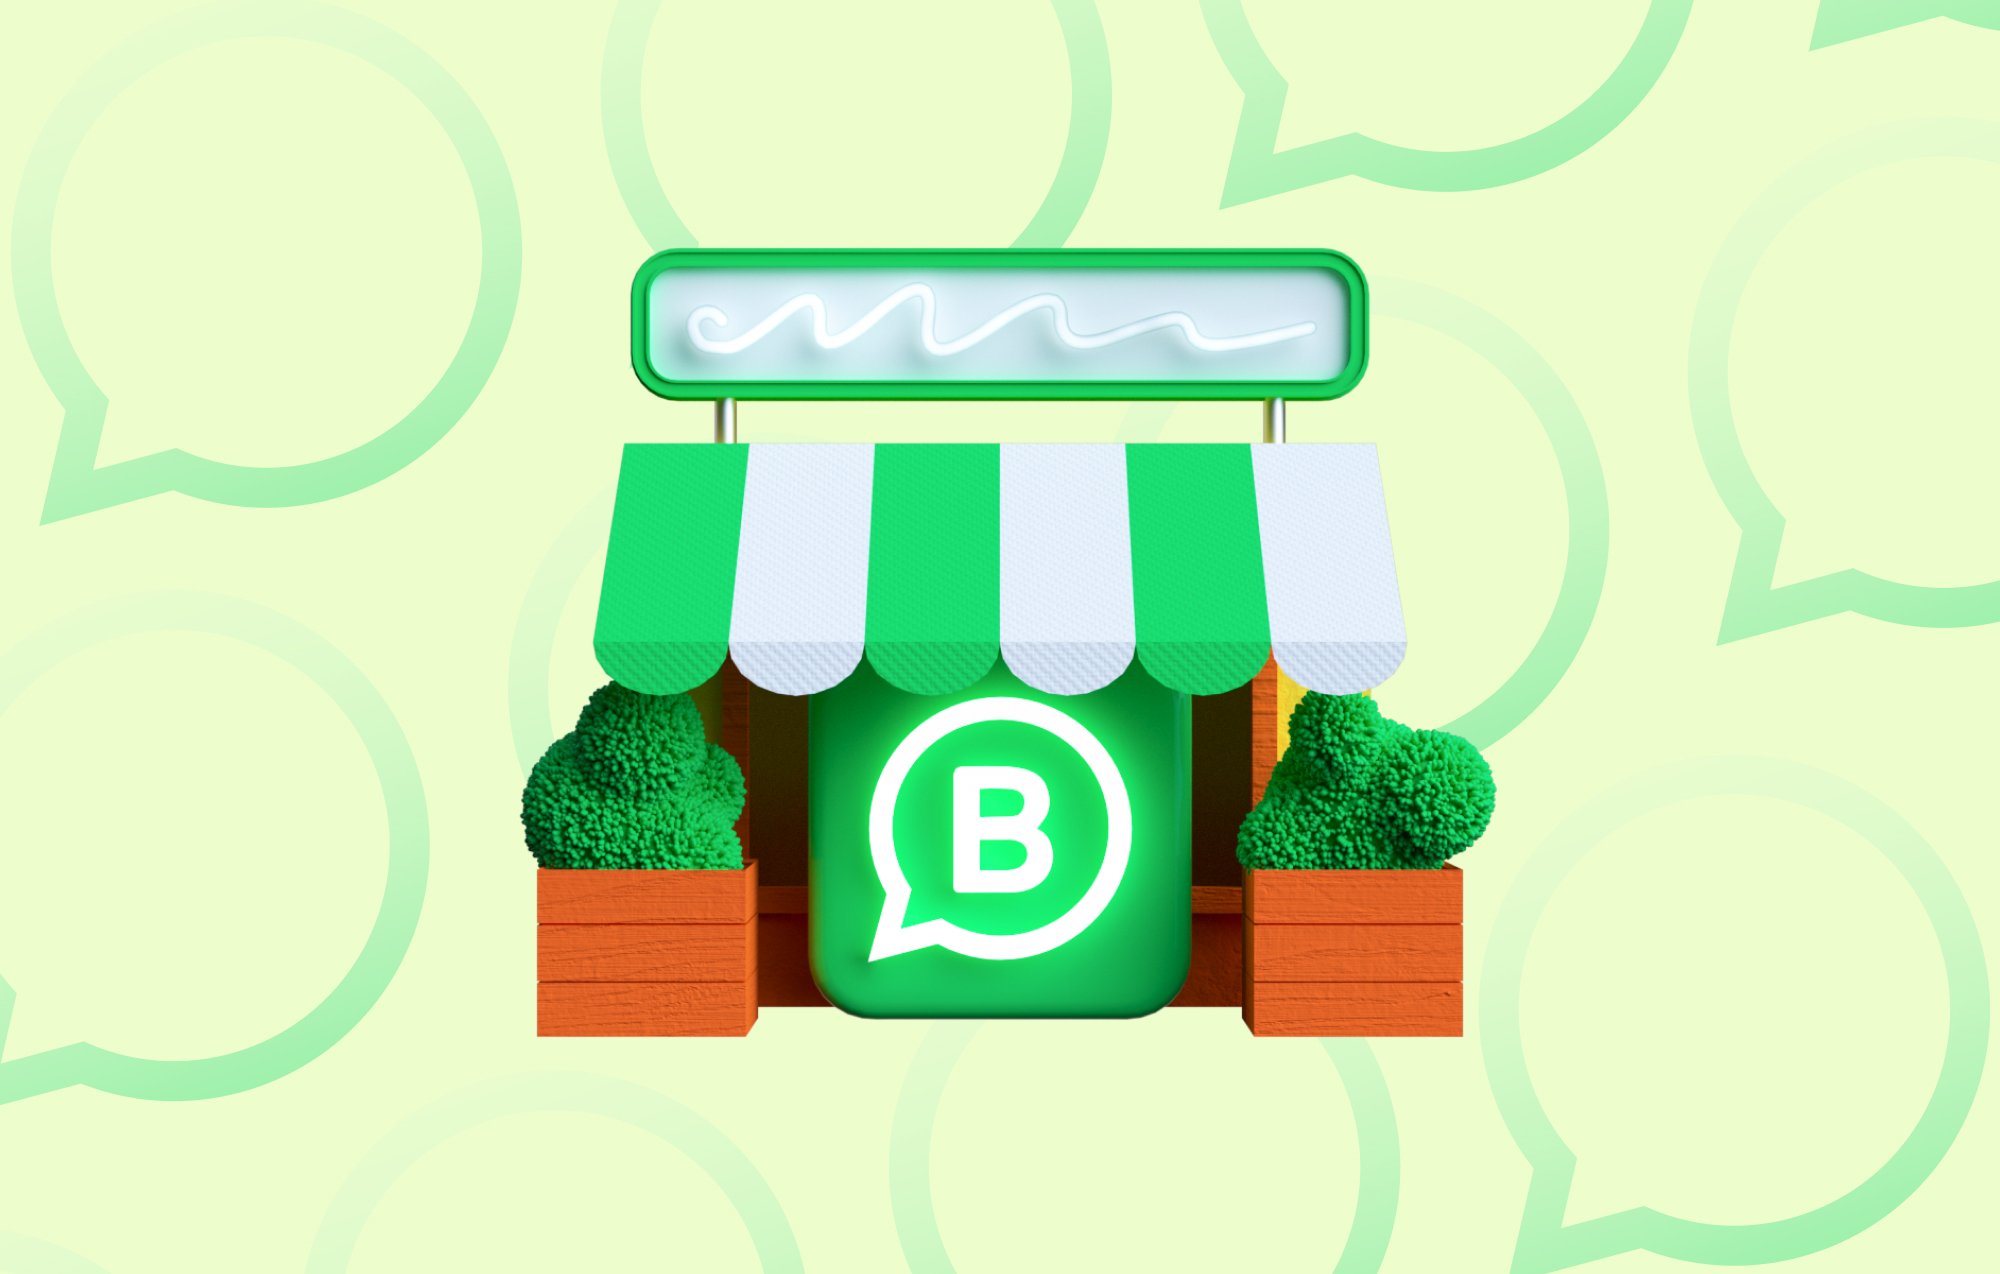 Articolo su WhatsApp Business di Charles: Immagine di un banco del mercato verde e bianco con il logo di WhatsApp Business.